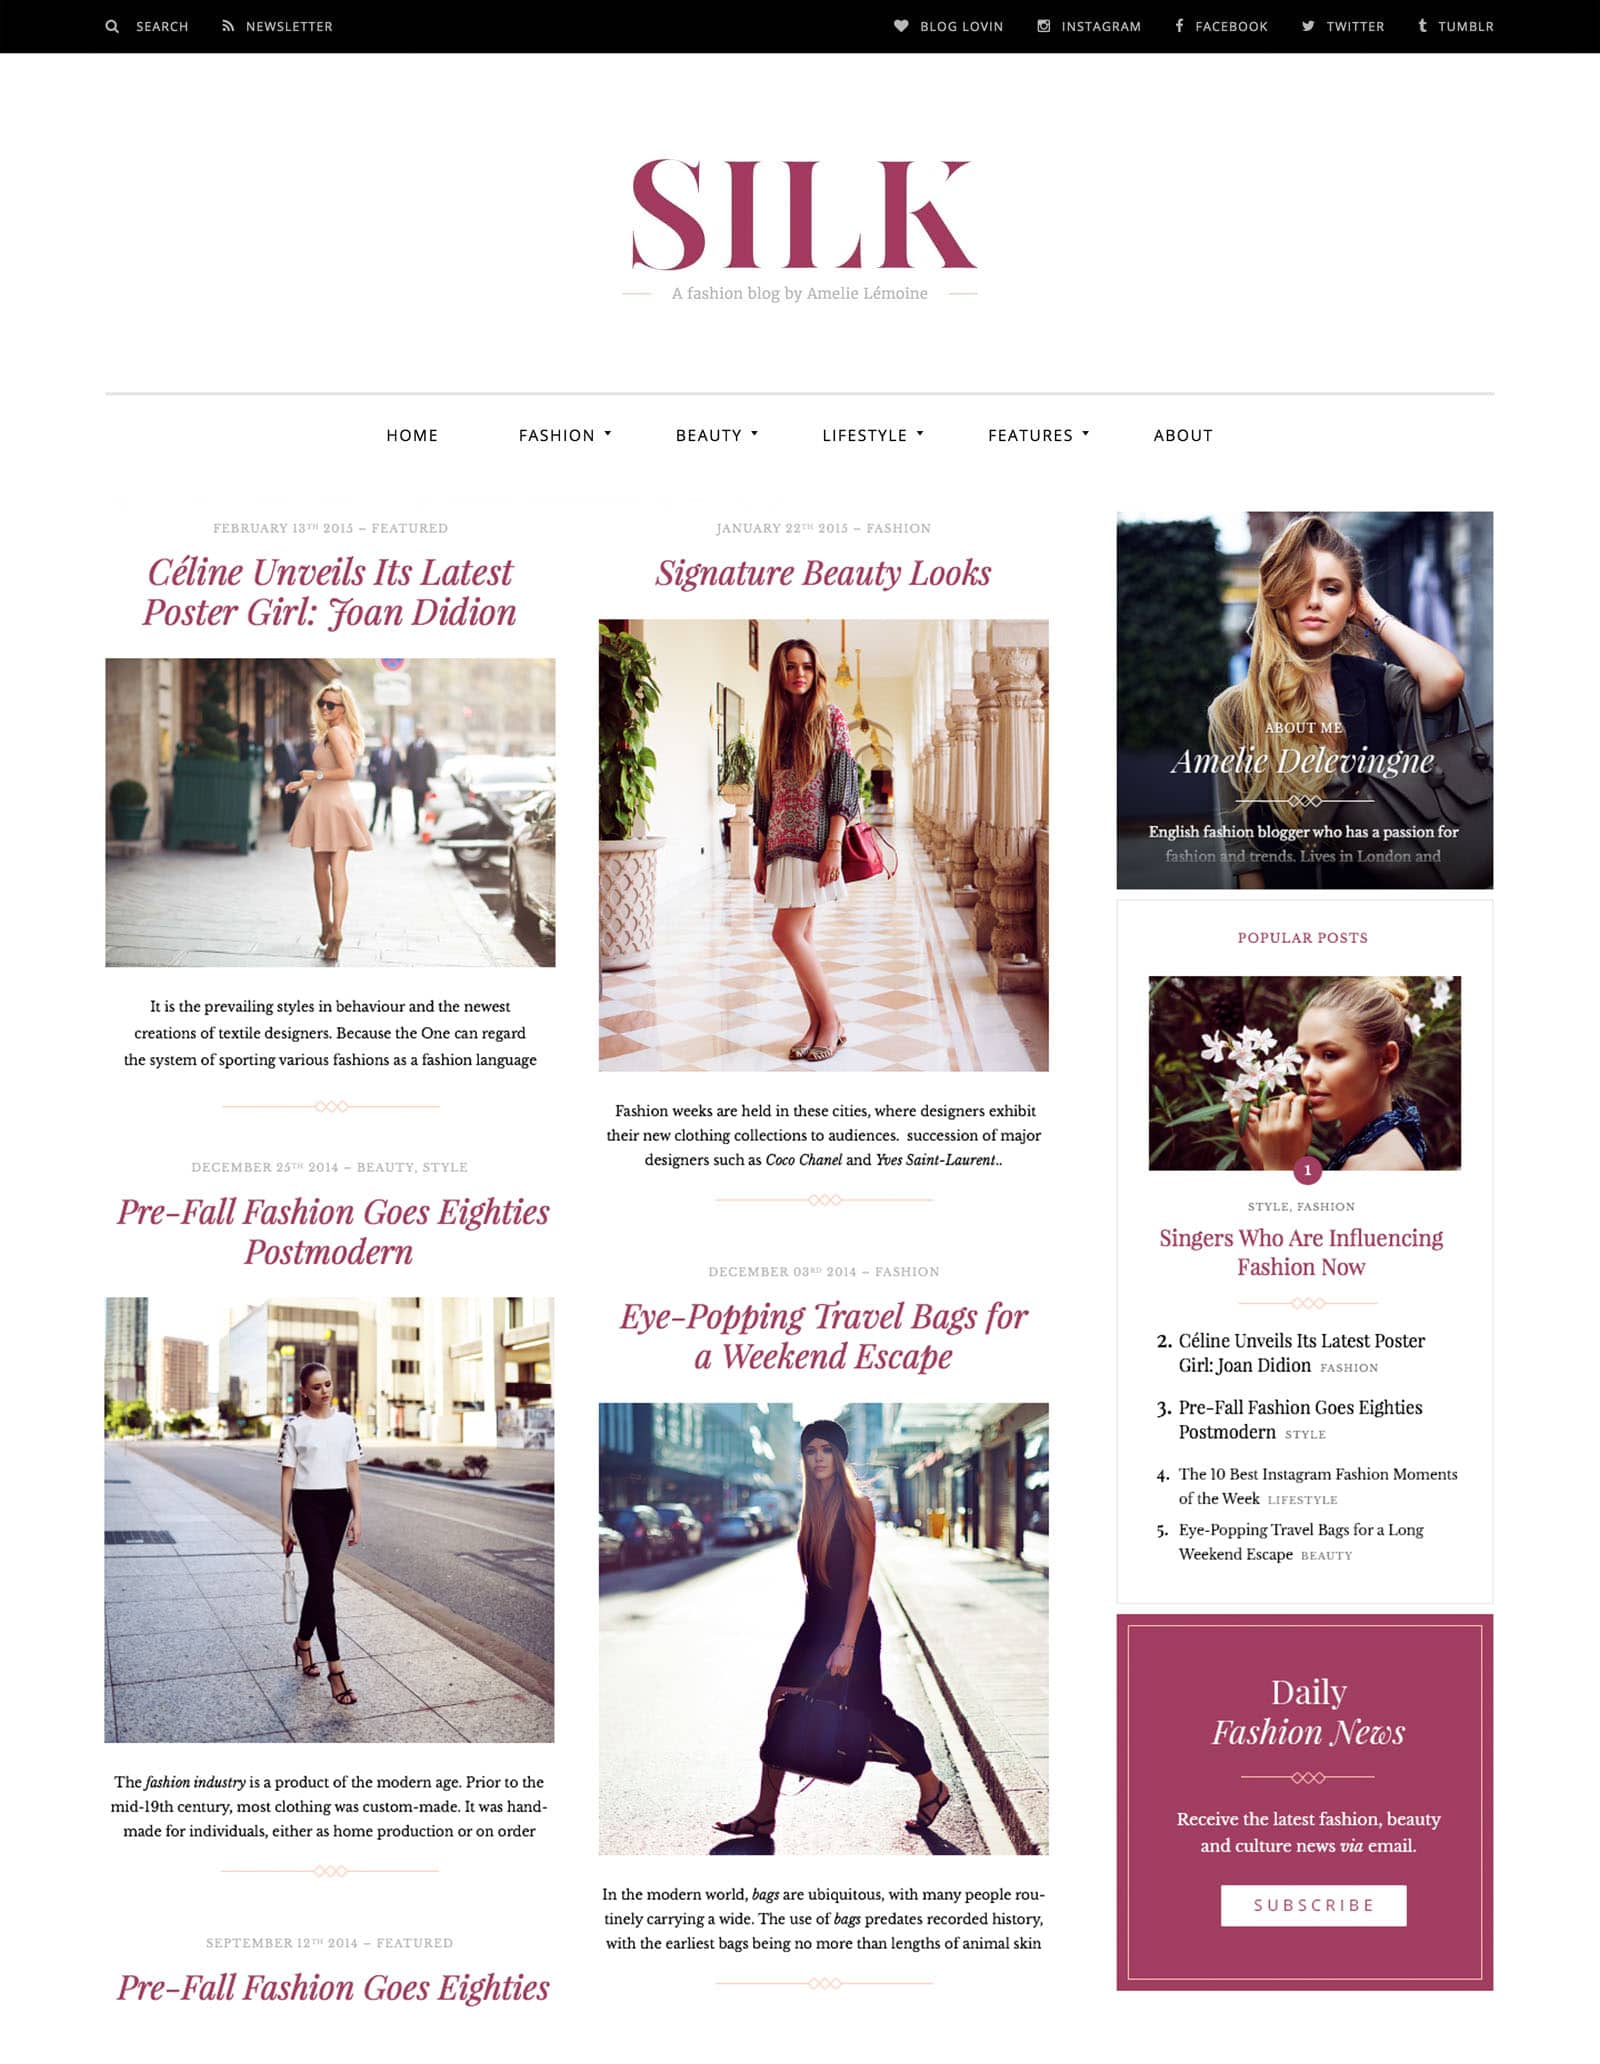 Desktop View for Silk Lite a free fashion blog WordPress theme